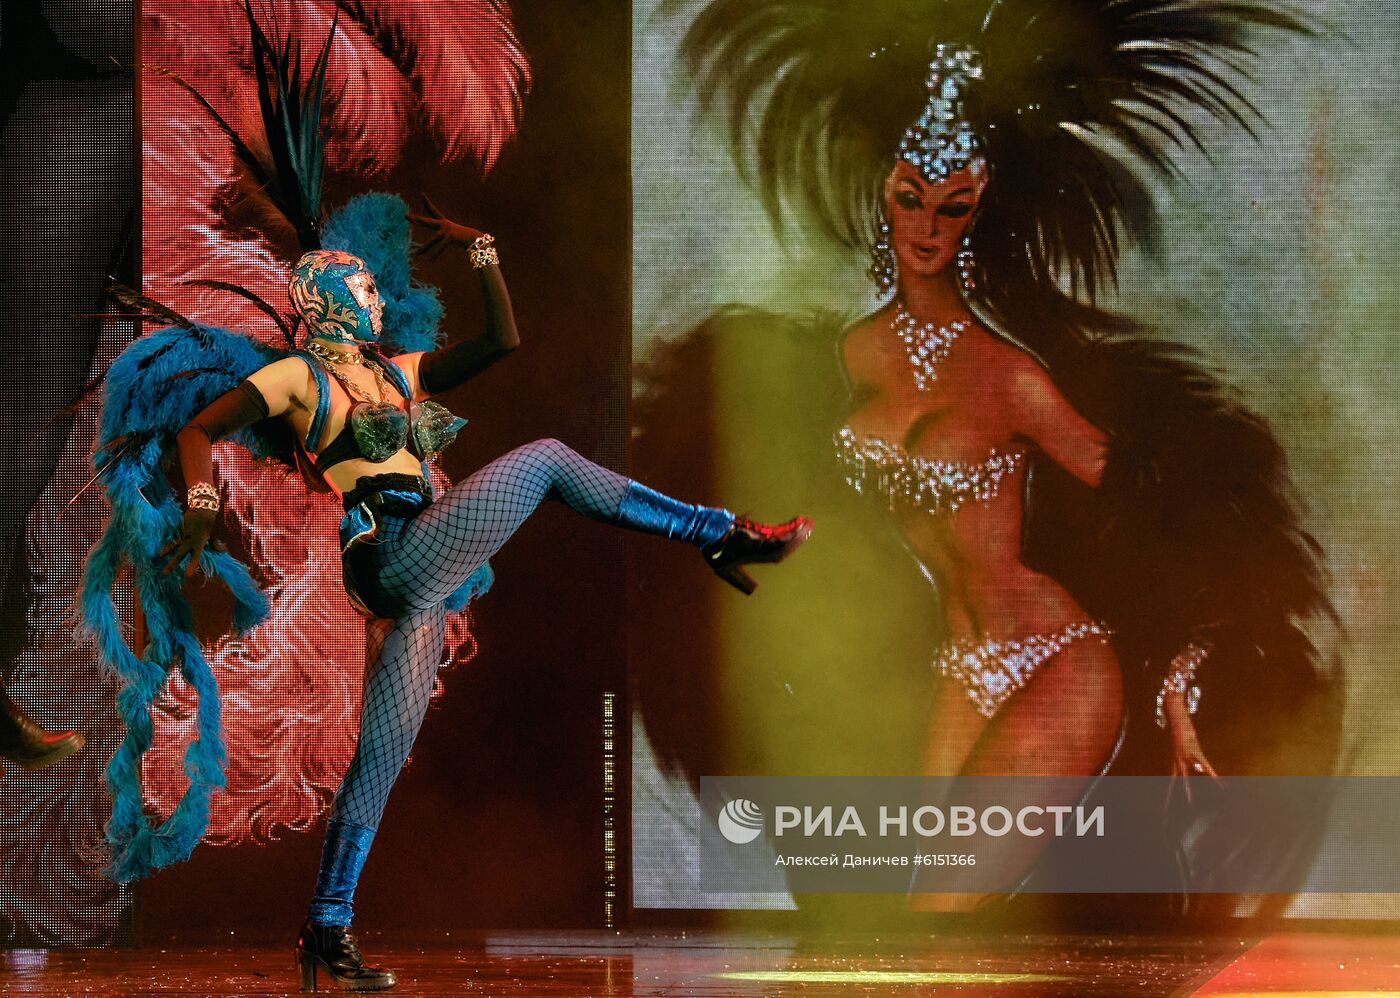 Fashion Freak Show Жана-Поля Готье в Санкт-Петербурге